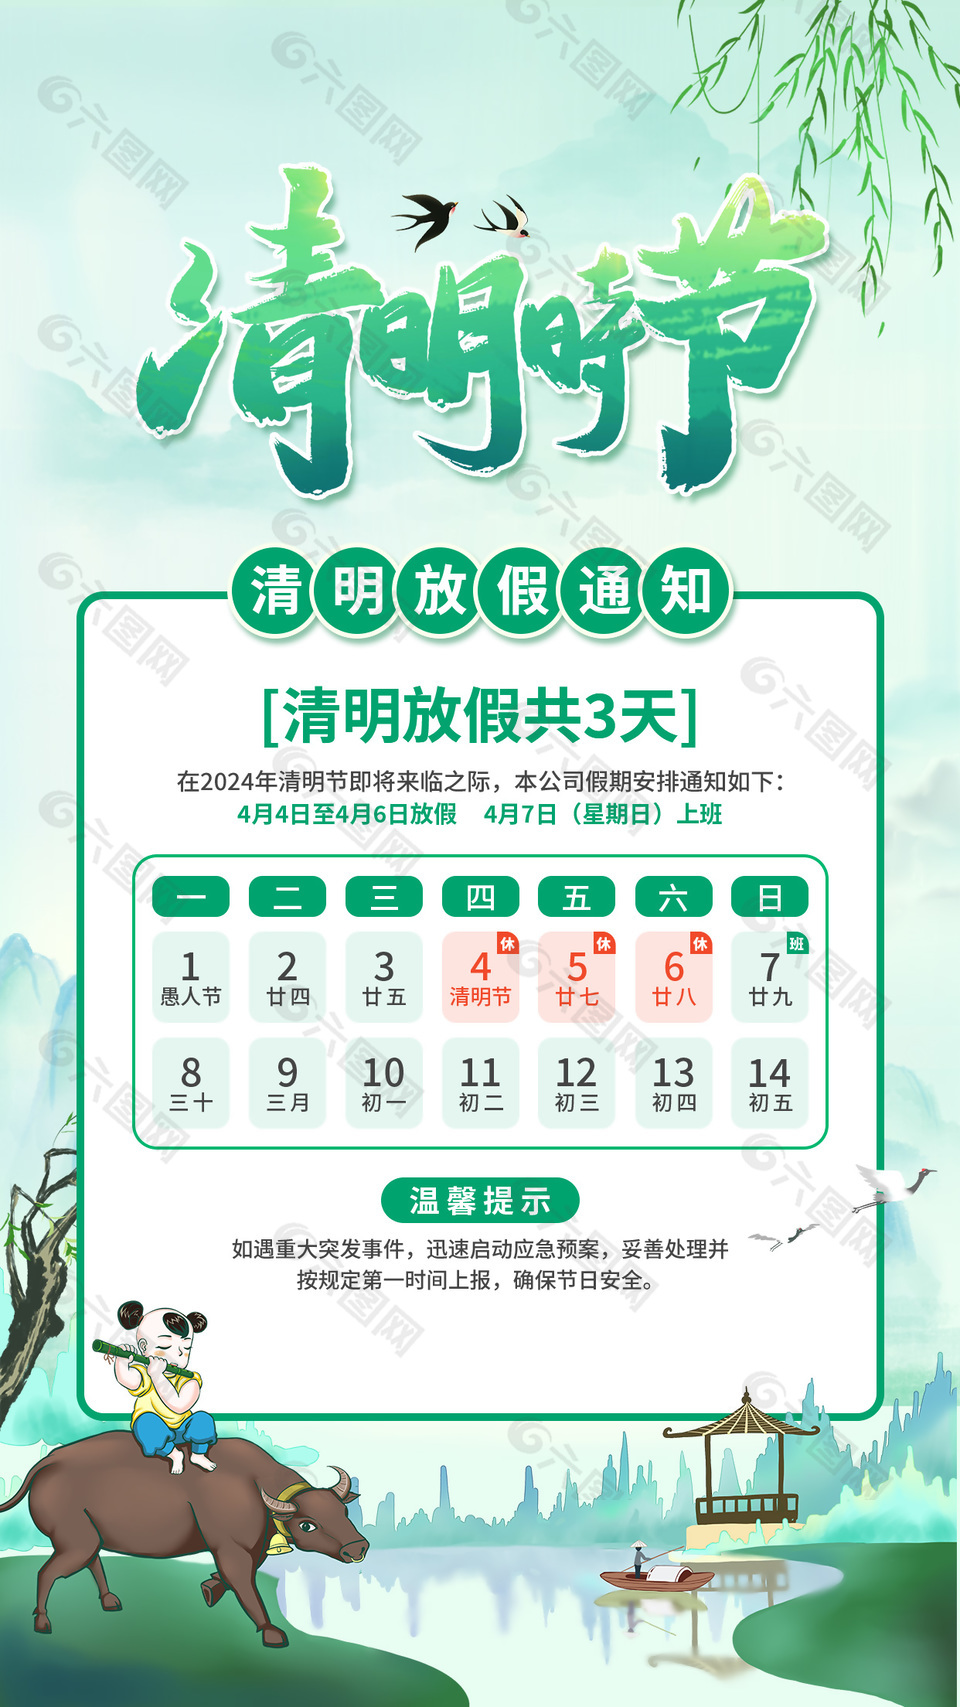 清明时节放假通知提示中国风手机海报